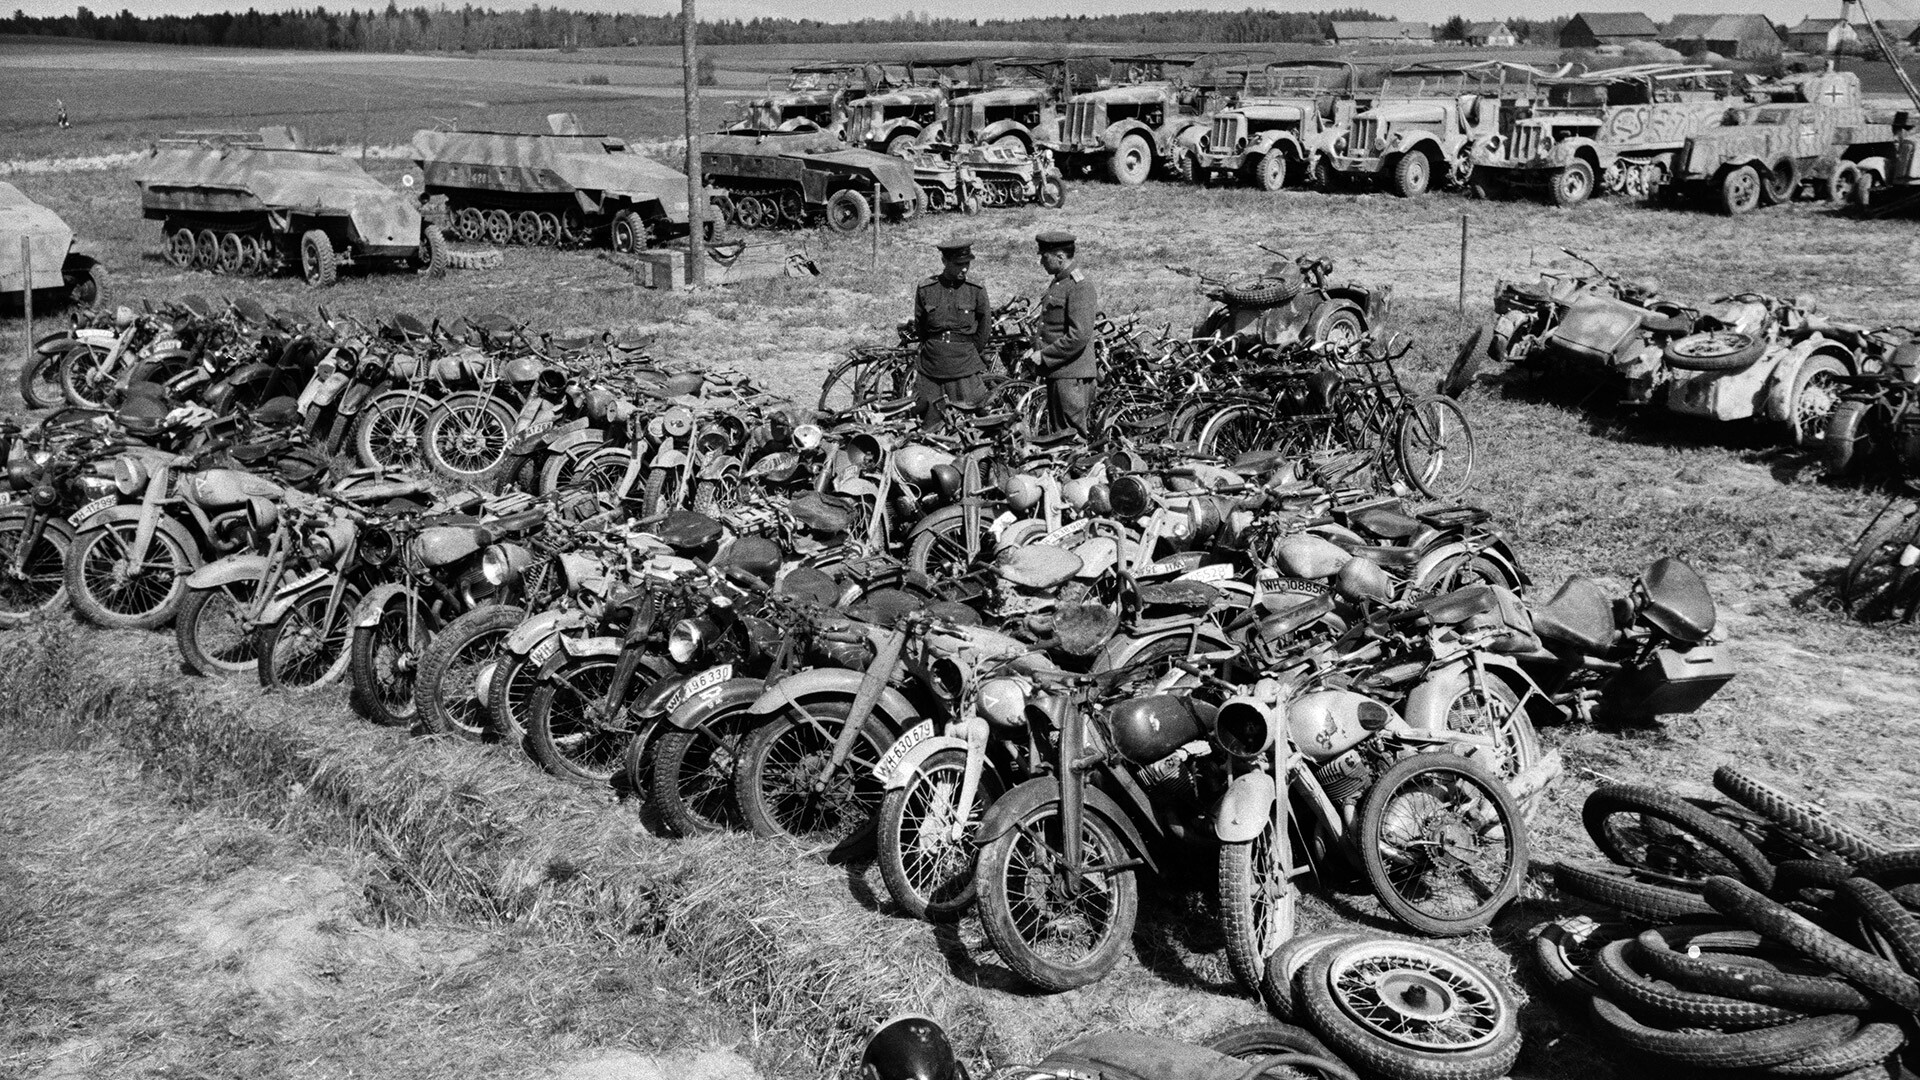 Velika domovinska vojna 1941-1945. Operacija v Kurlandiji (blokada Kurlandske grupacije). Sovjetski častniki pregledujejo nemško opremo po kapitulaciji skupine nemških sil v Kurlandiji.